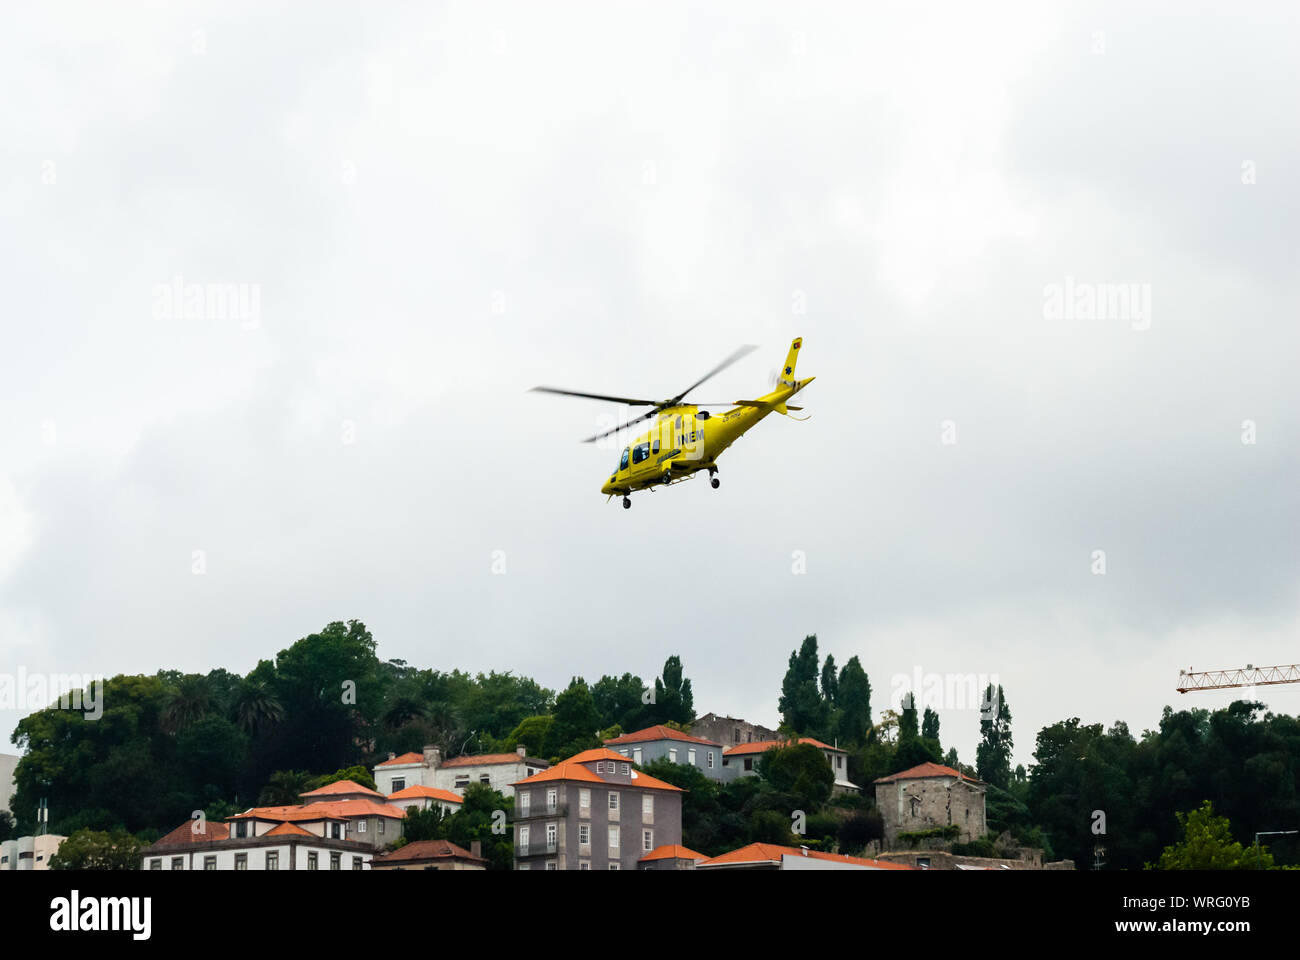 PORTO, PORTUGAL - 18 juin 2014 : Un hélicoptère de l'INEM air ambulance prend son envol au-dessus du fleuve Douro à ciel couvert. Banque D'Images